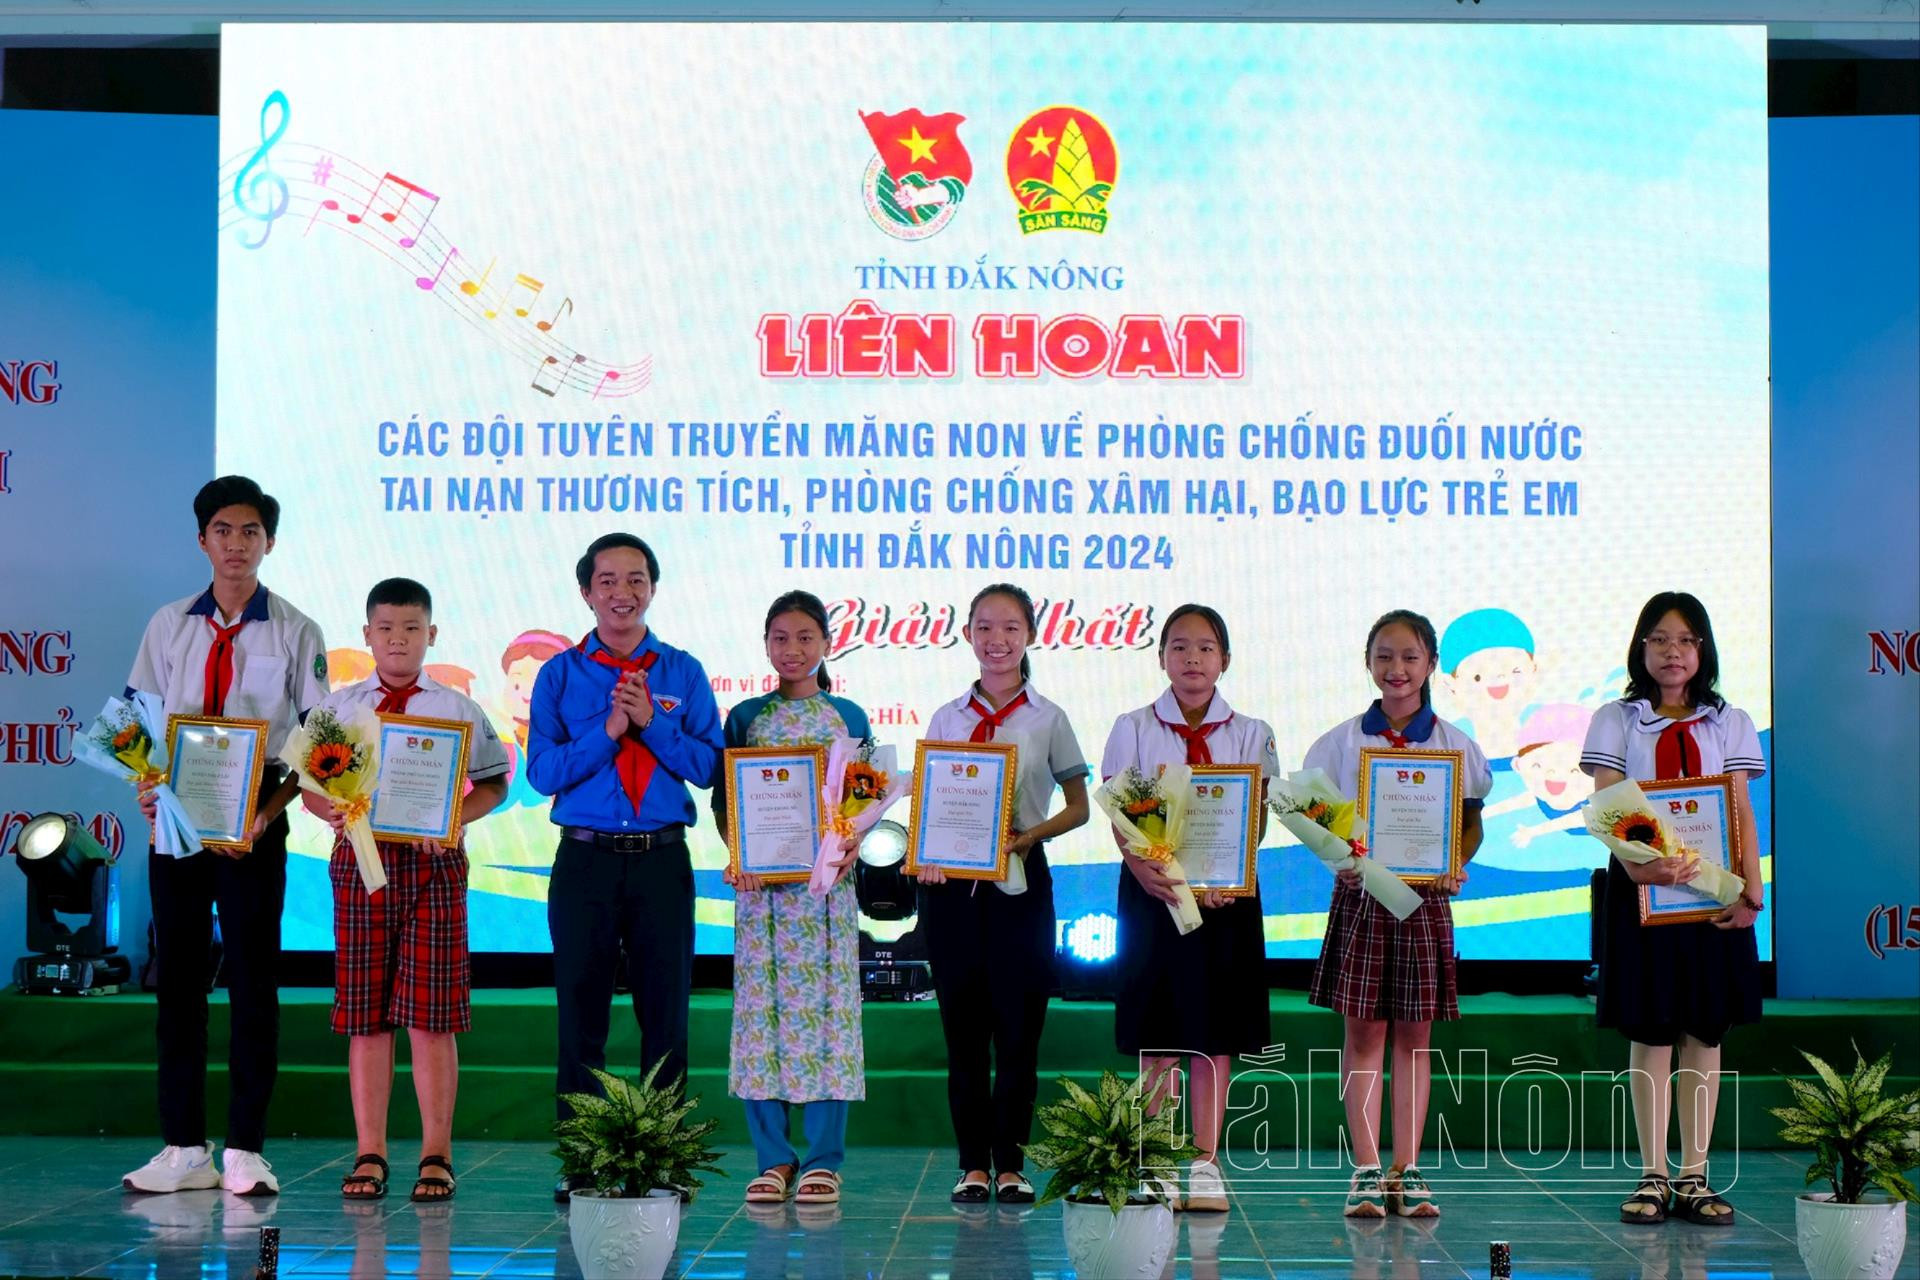 Đồng chí Trương Văn Bình, Bí thư Tỉnh đoàn, Chủ tịch Hội Liên hiệp Thanh niên Việt Nam tỉnh Đắk Nông trao tặng giấy khen và hoa cho cacác thí sinh đoạt giải